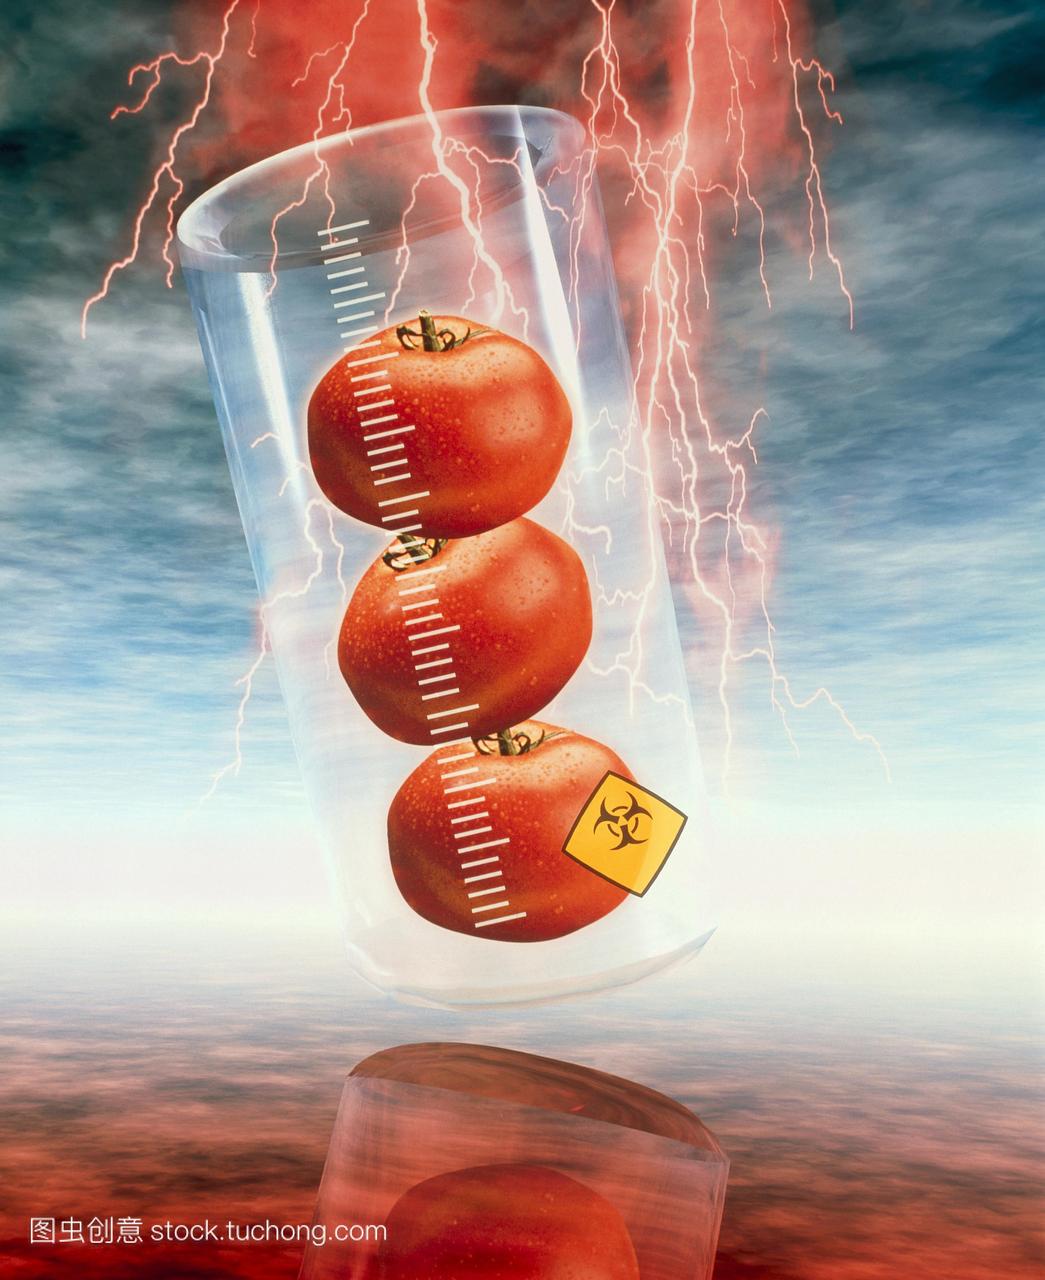 转基因西红柿。三个西红柿烧瓶的概念形象。瓶